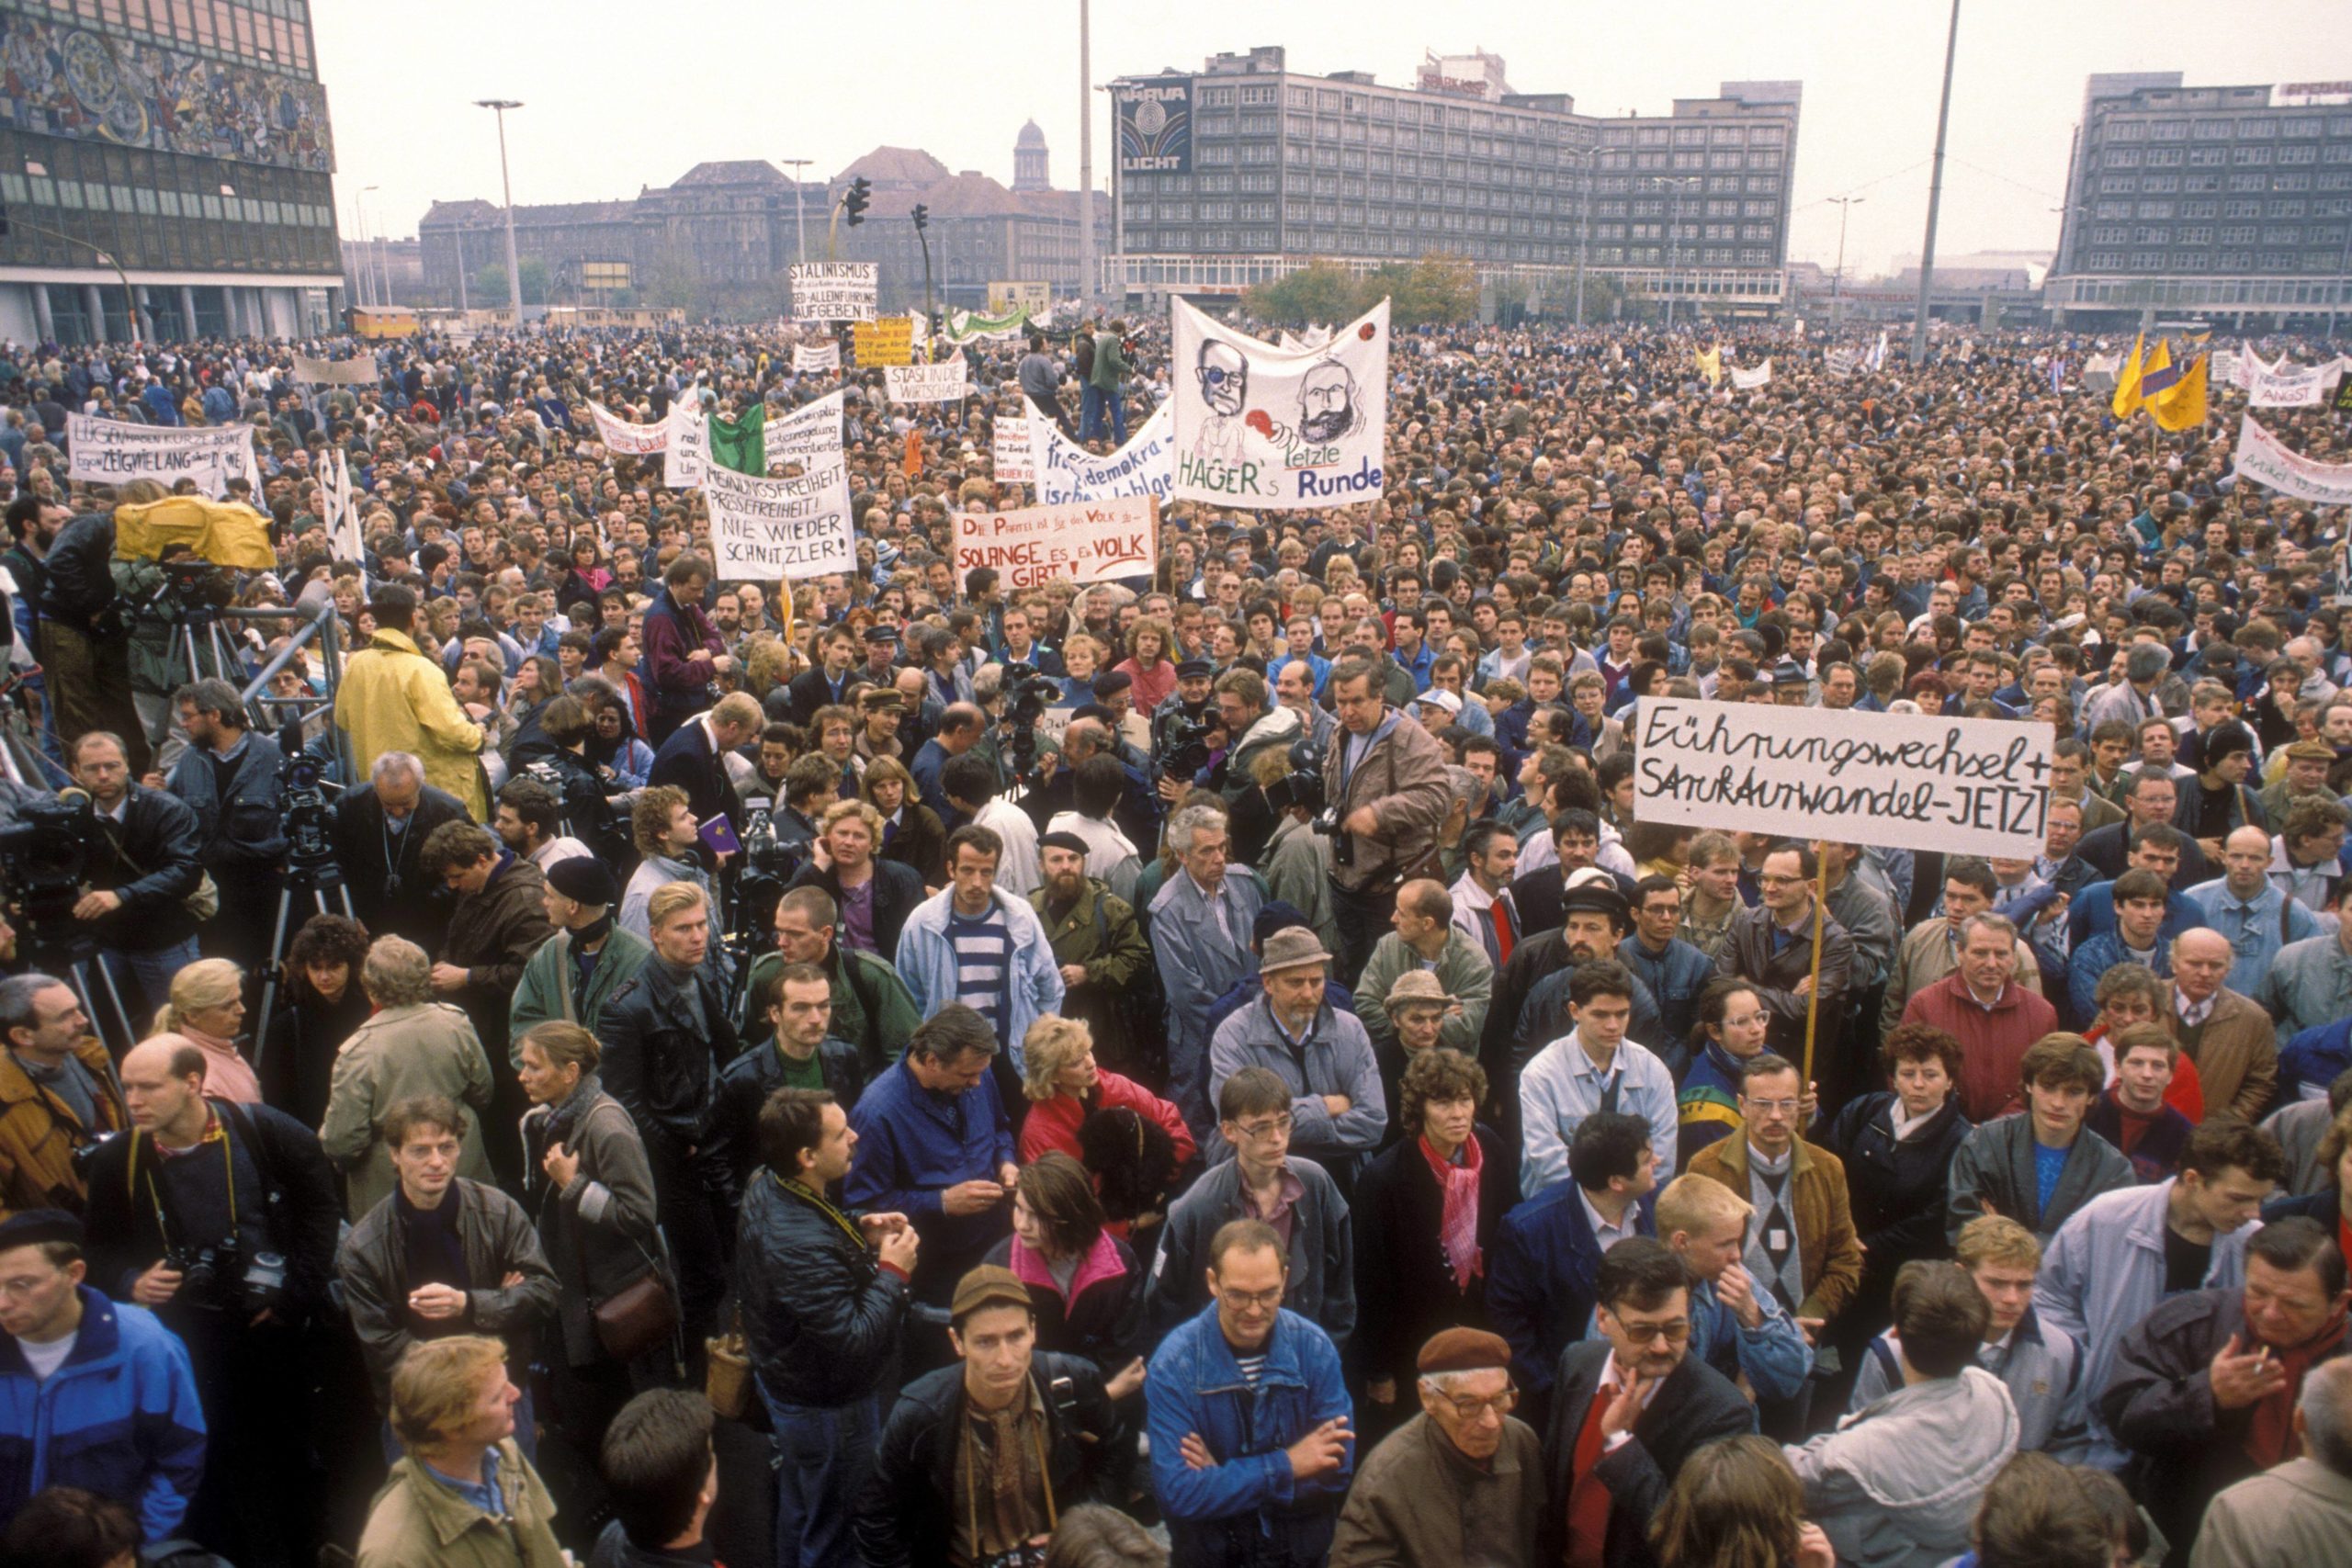 Protest in den 80ern: Die größte deutsche Demo fand am 4. November 1989 auf dem Alexanderplatz statt. 